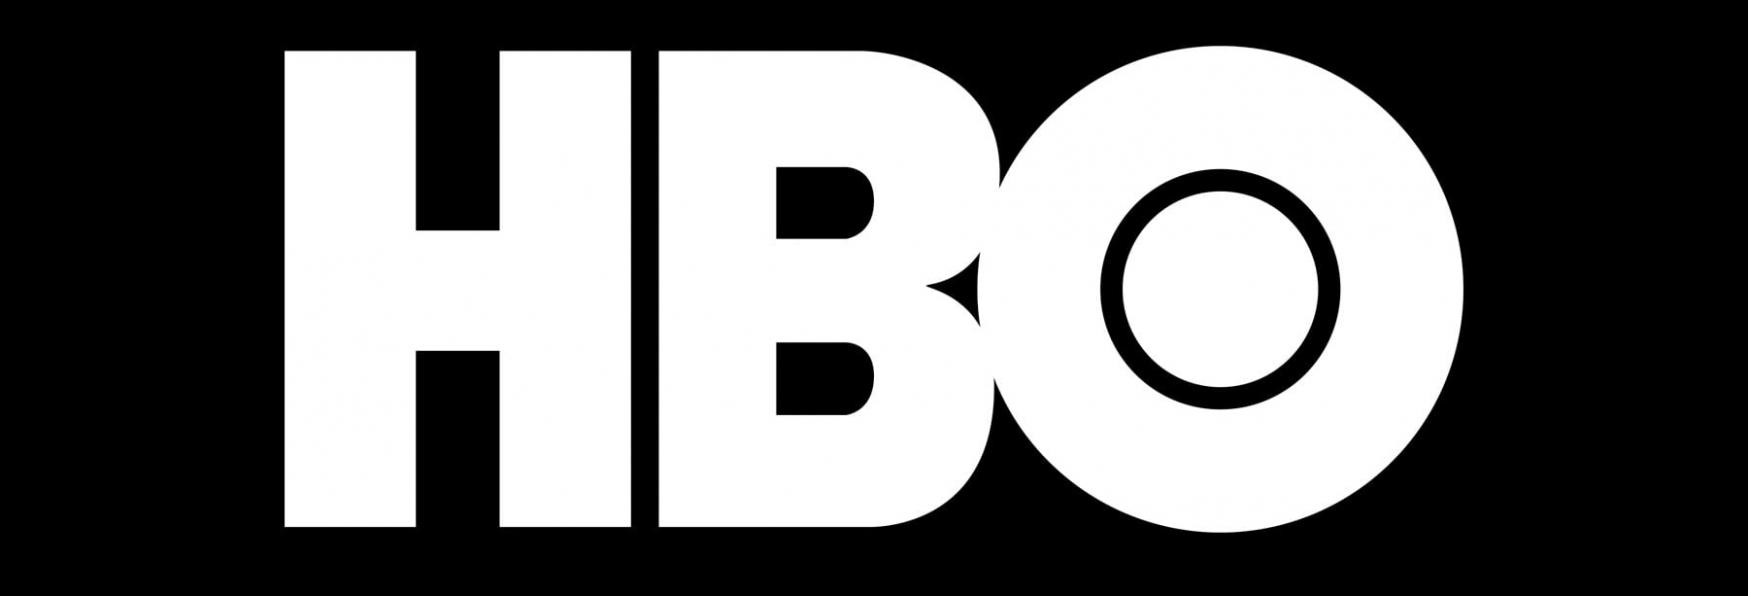 The Baby: il Trailer svela la Data di Uscita della nuova Serie TV di HBO e Sky